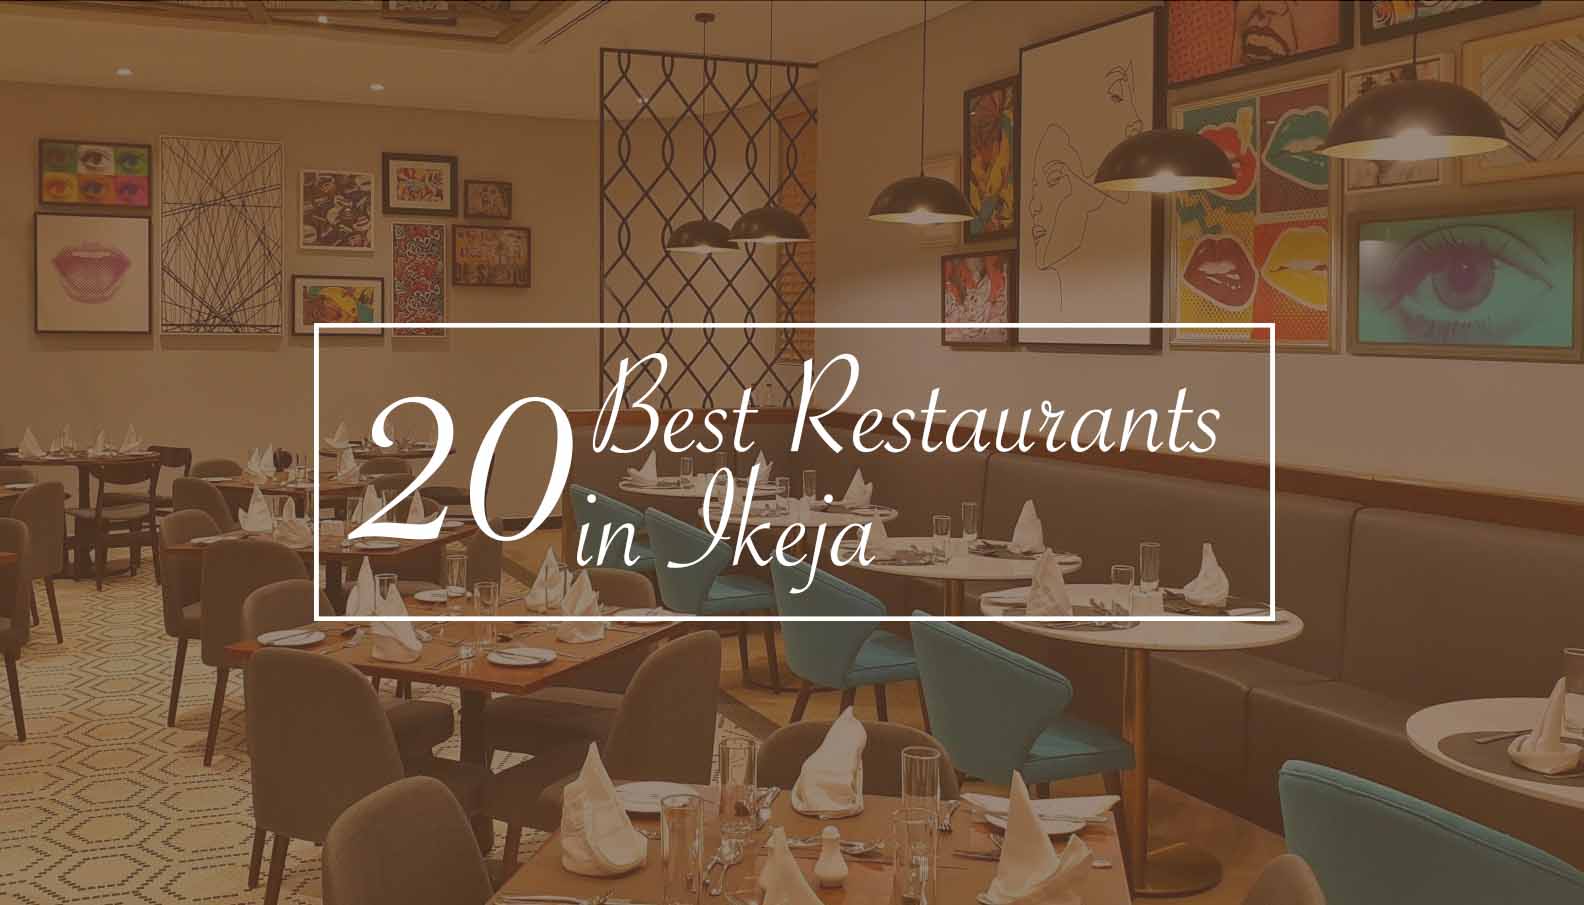 Best Restaurants in Ikeja